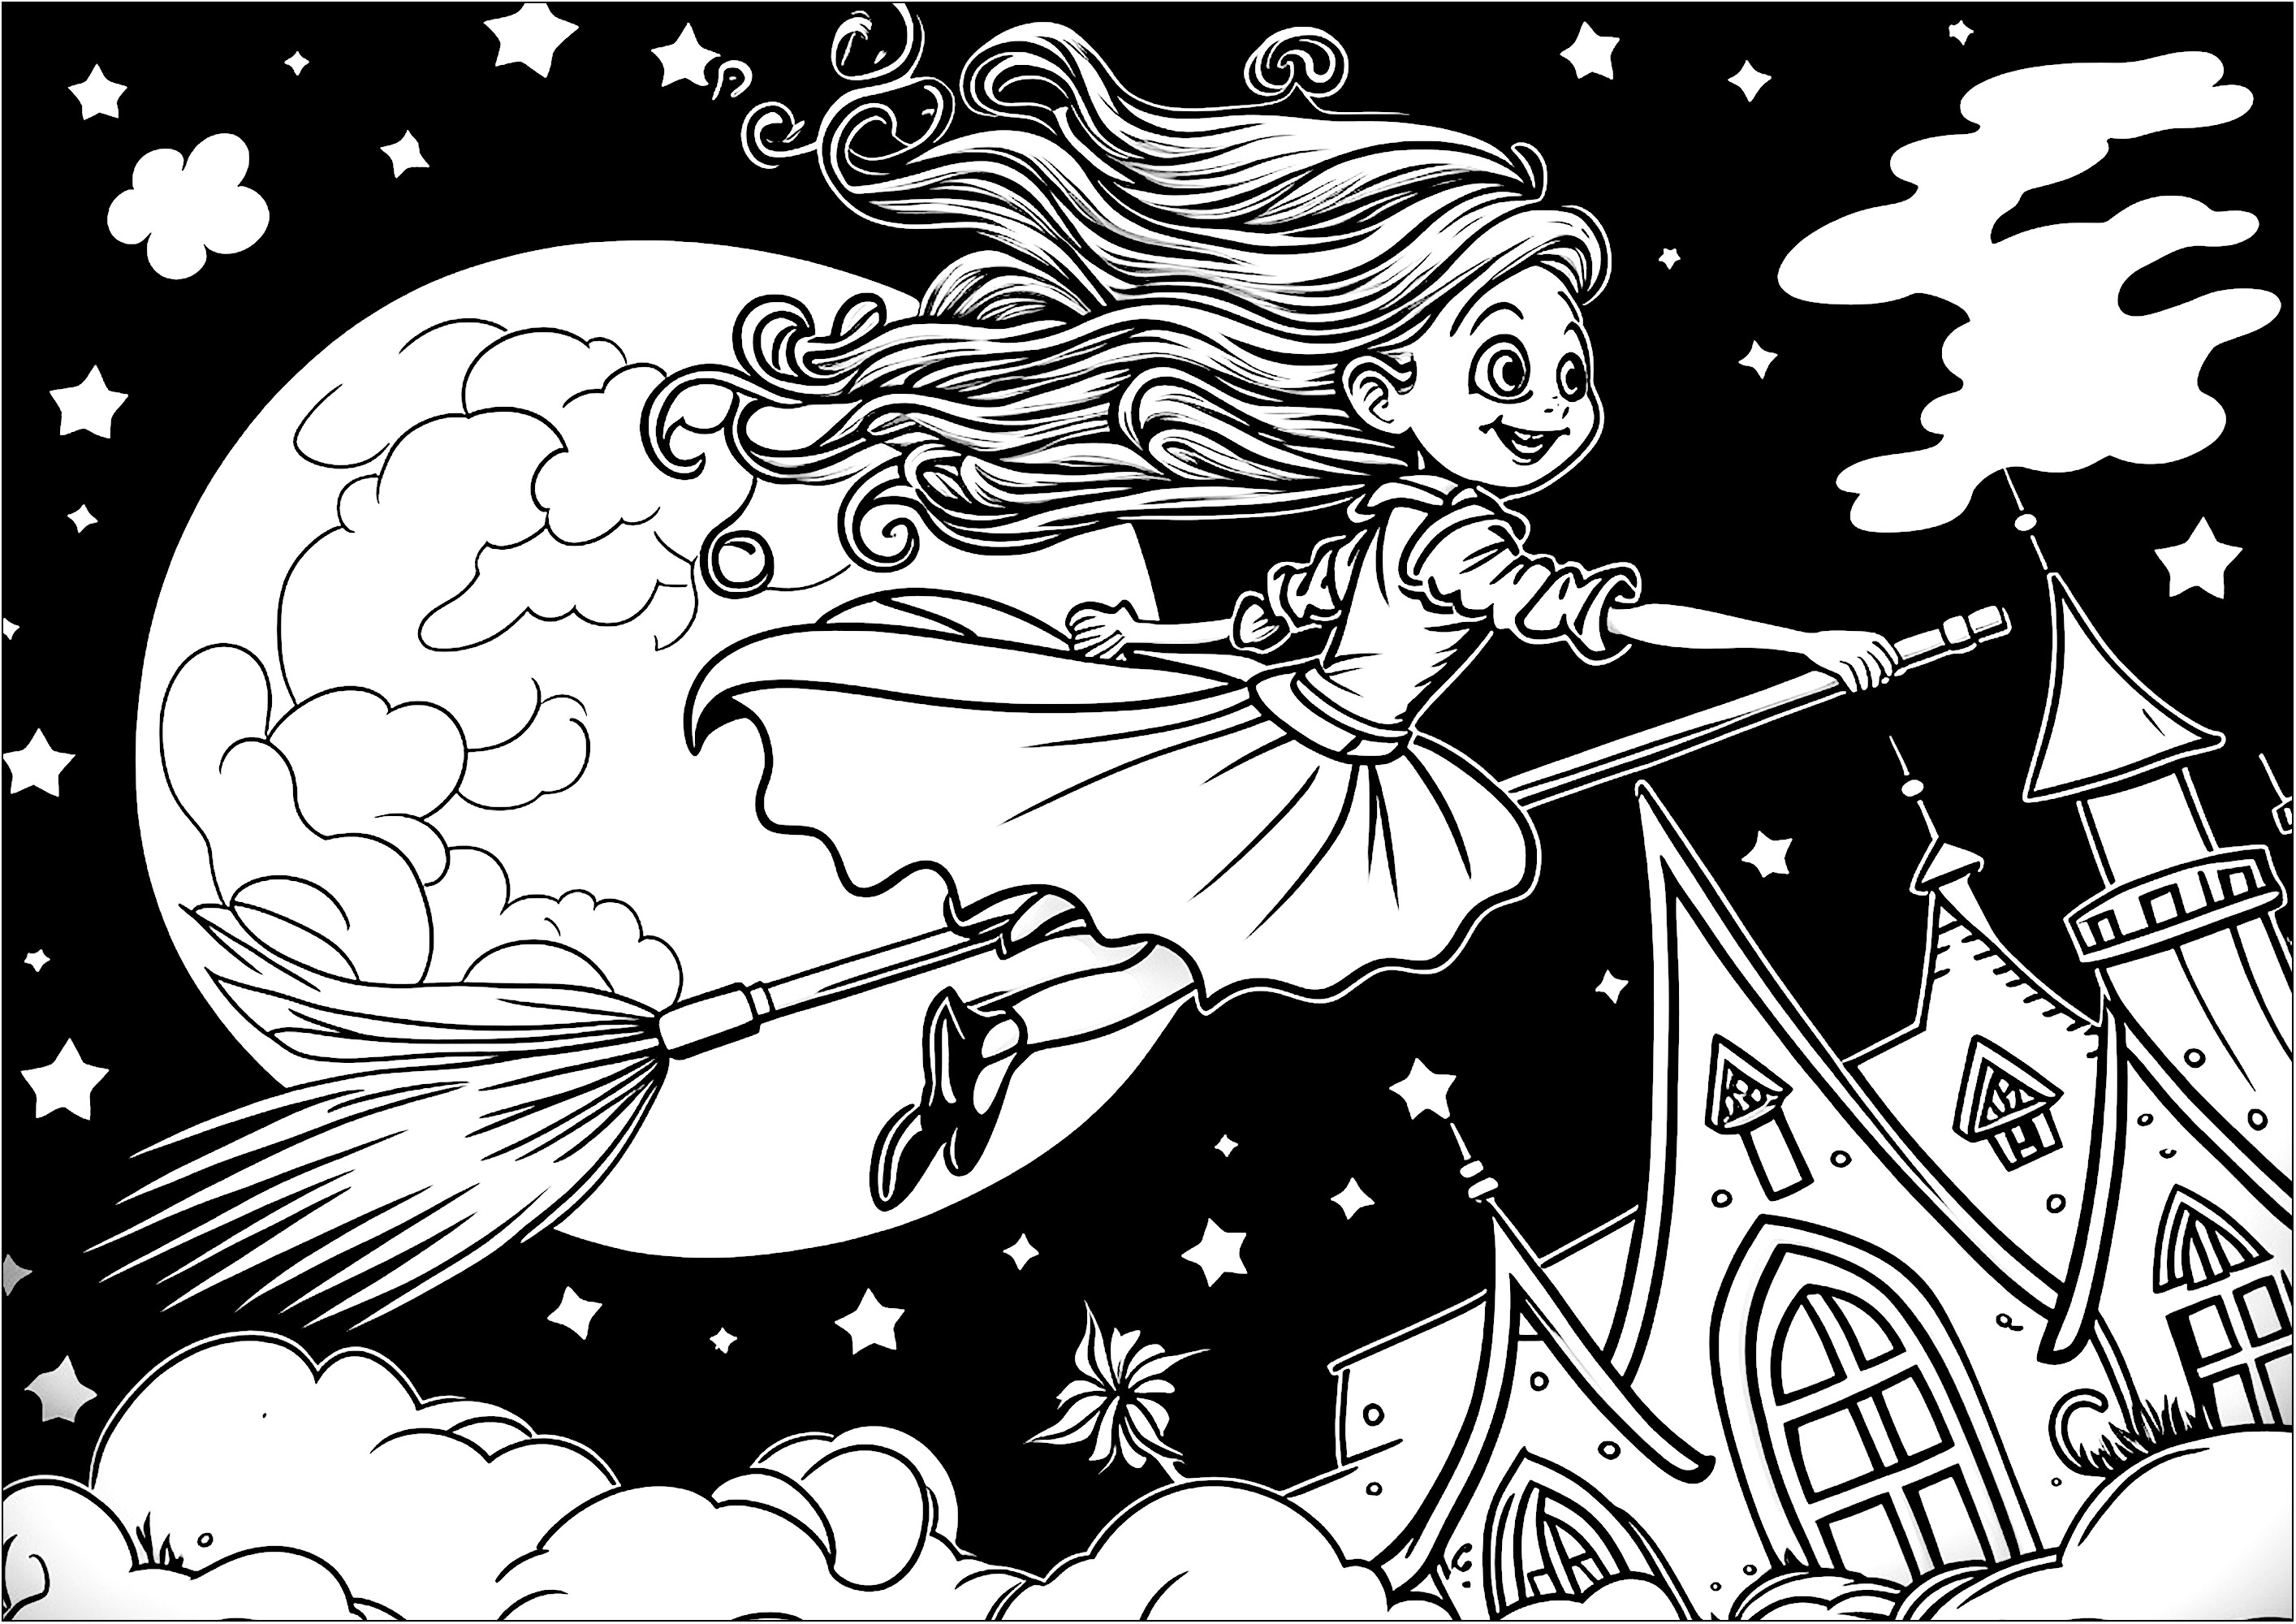 Coloriage d'une jeune sorcière sur un balais. Coloriez cette sorcière volant sur son balai à travers un ciel étoilé, devant la pleine lune, semblant géante.